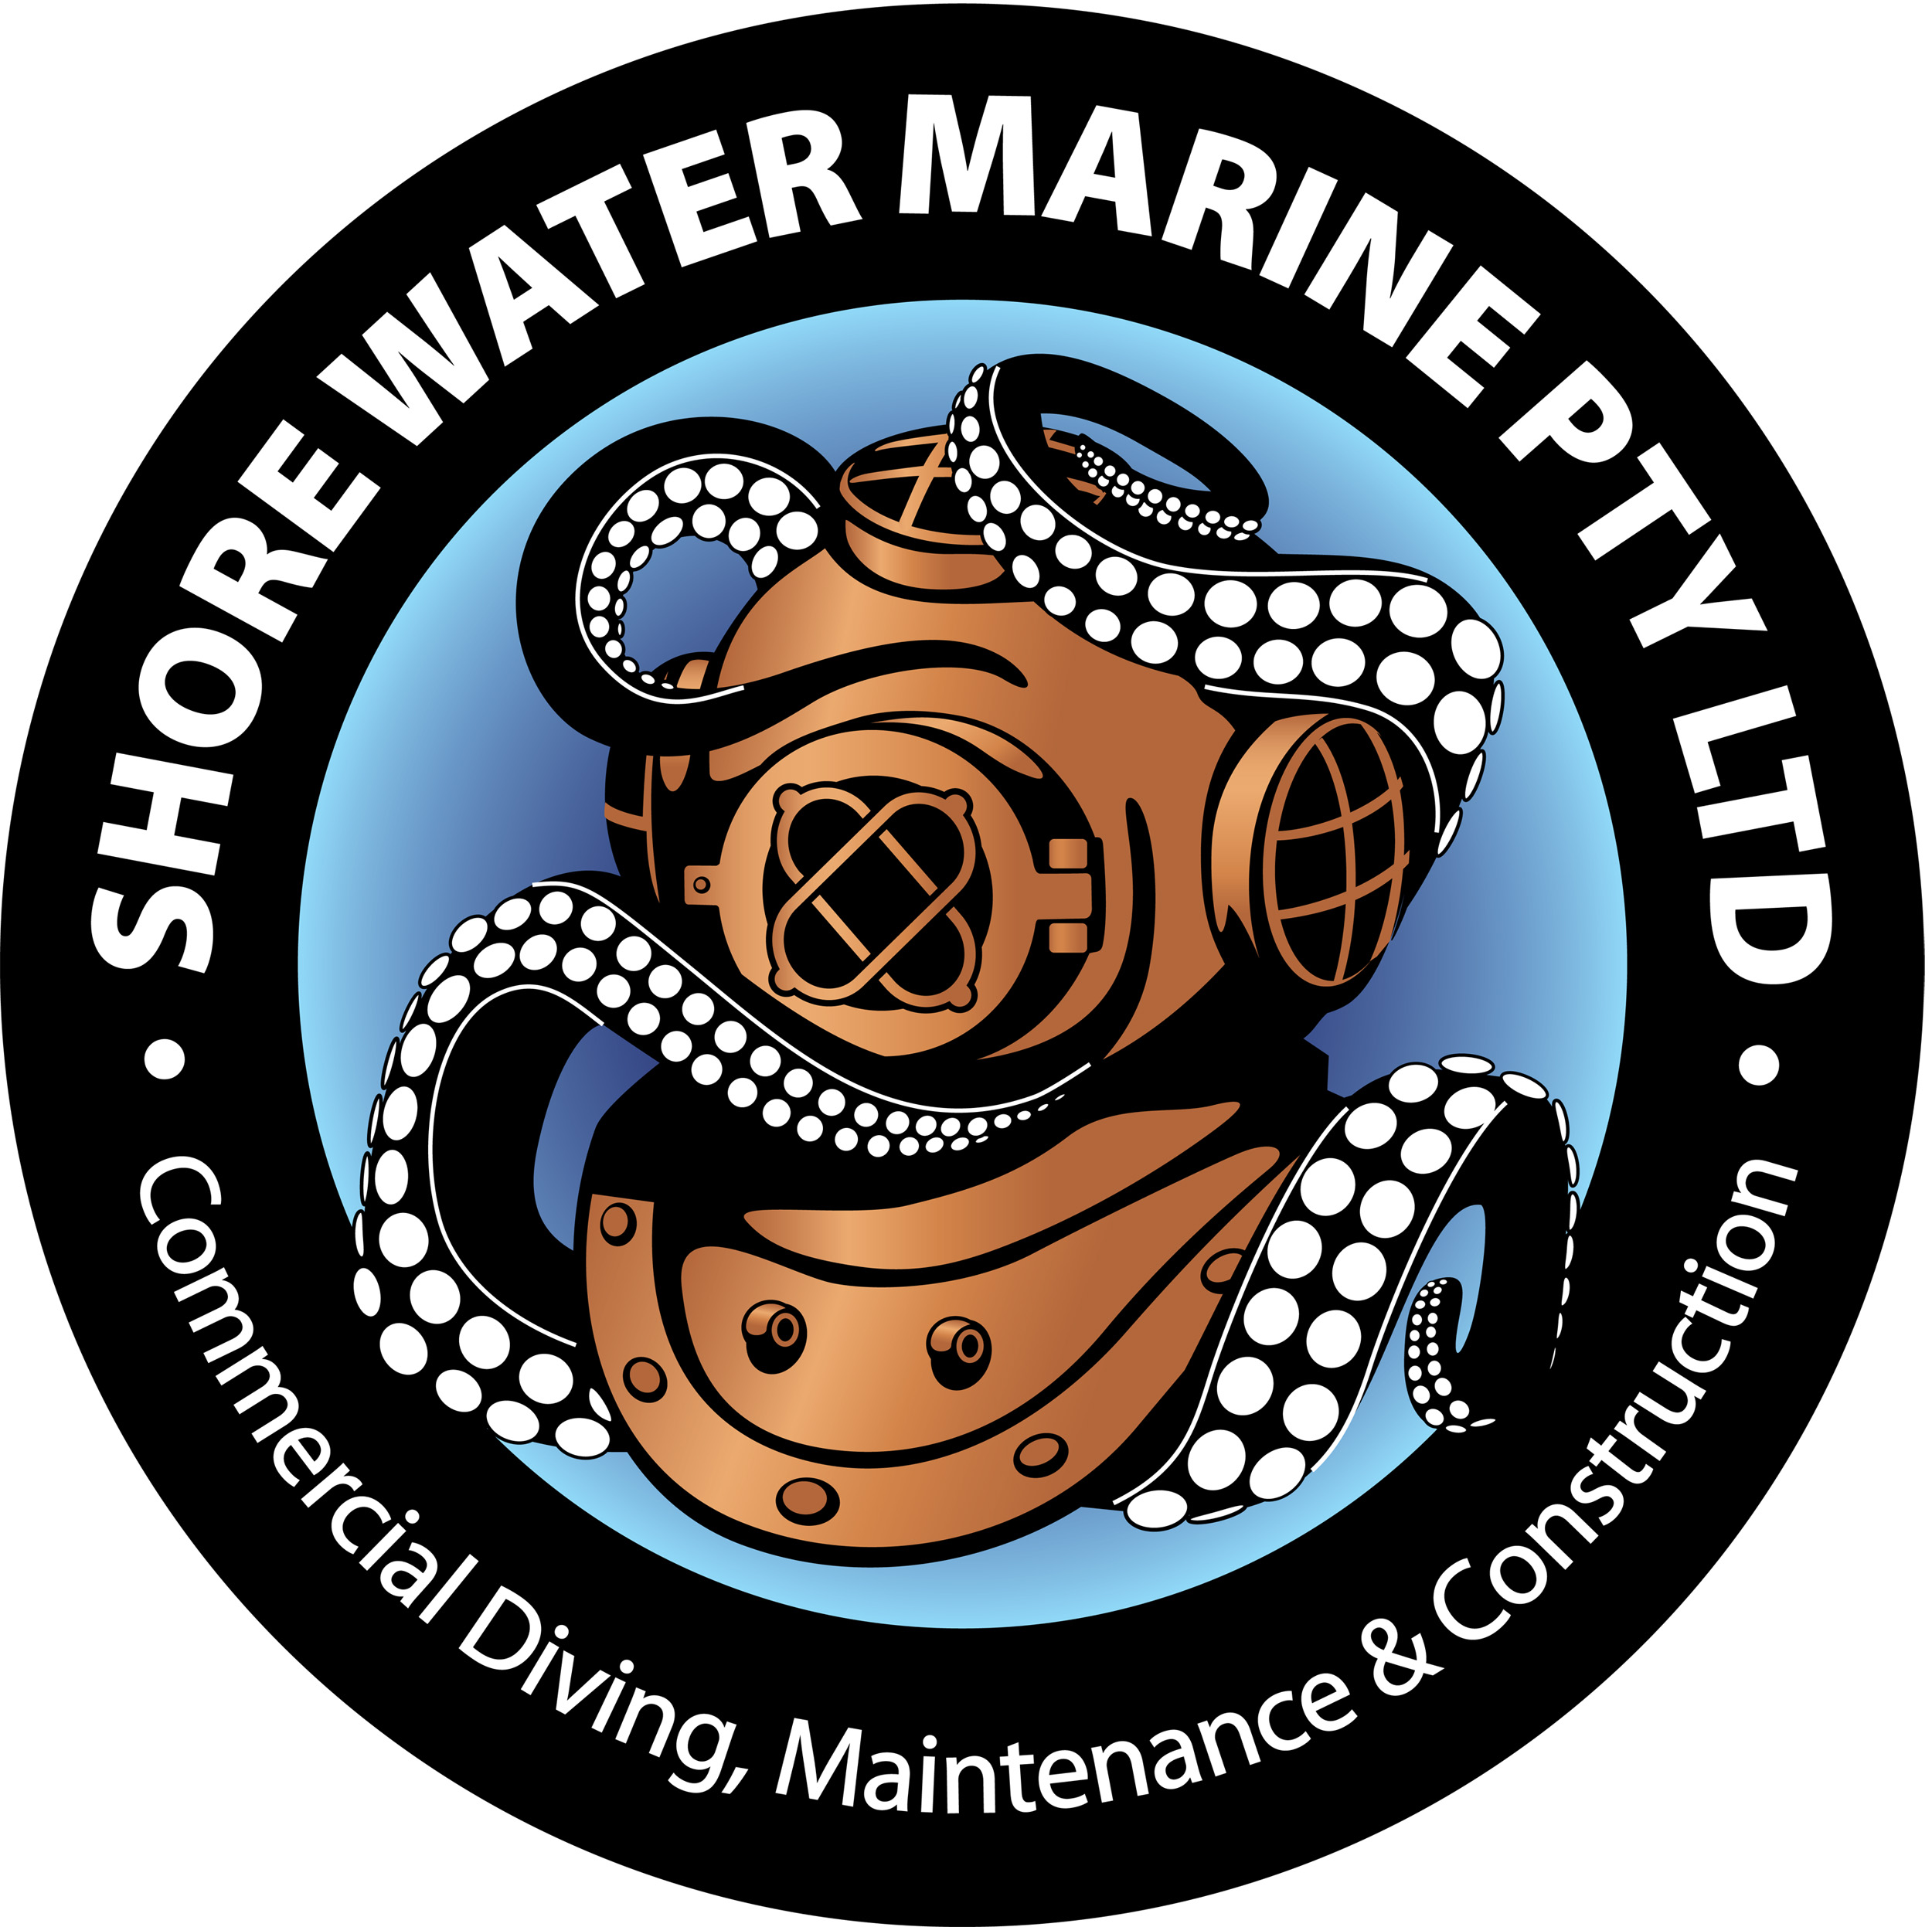 Shorewater Marine PTY LTD